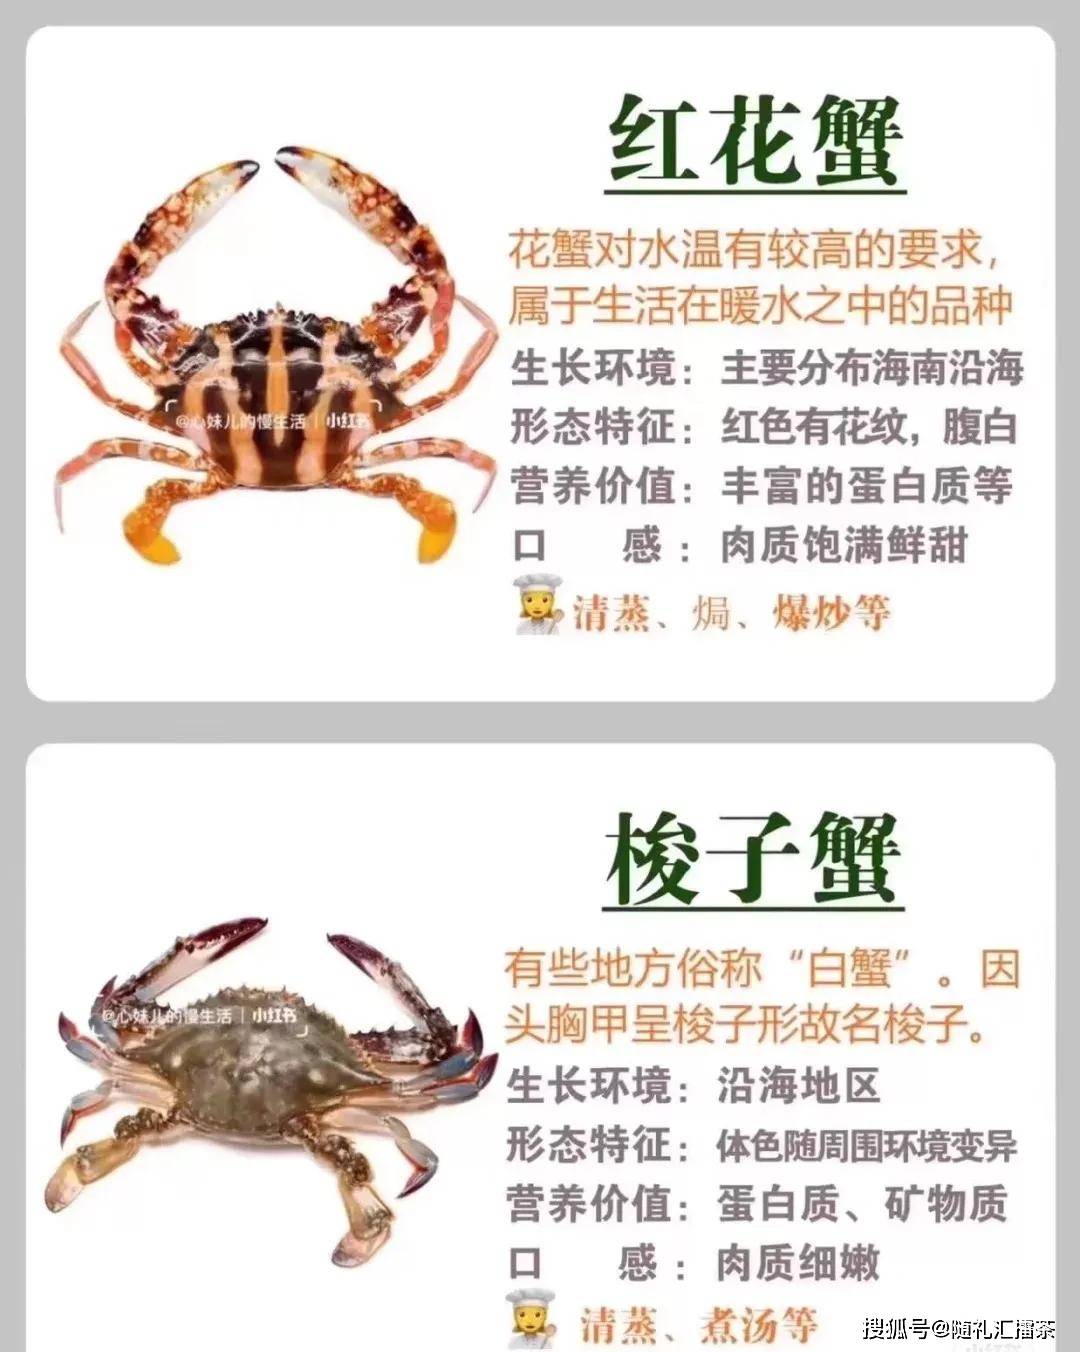 常见螃蟹的区别